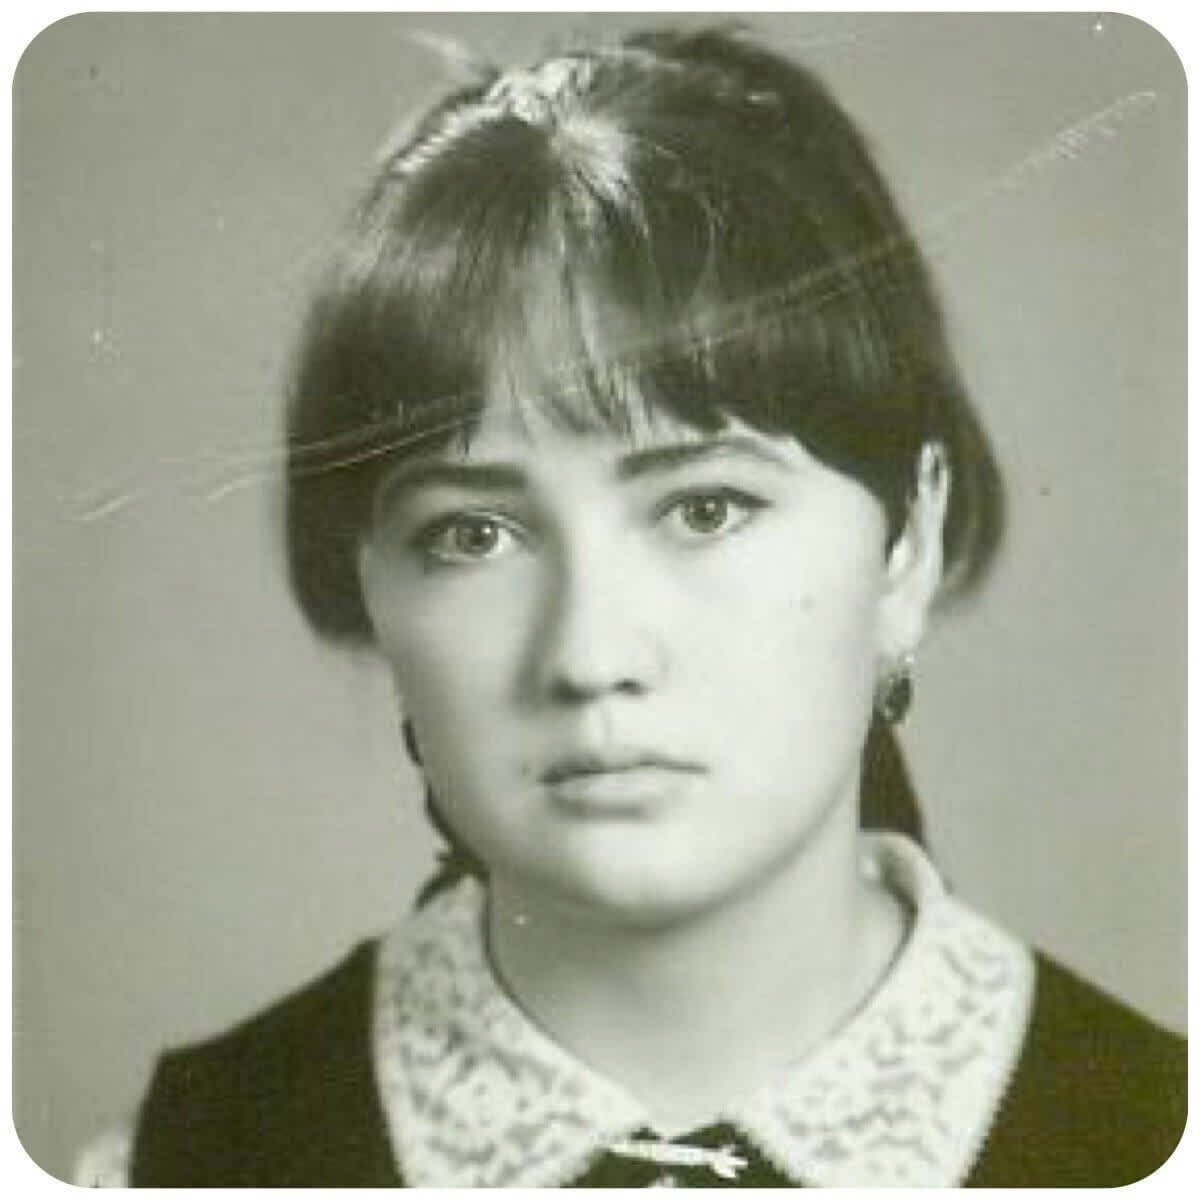 Лариса Гузеева в молодости